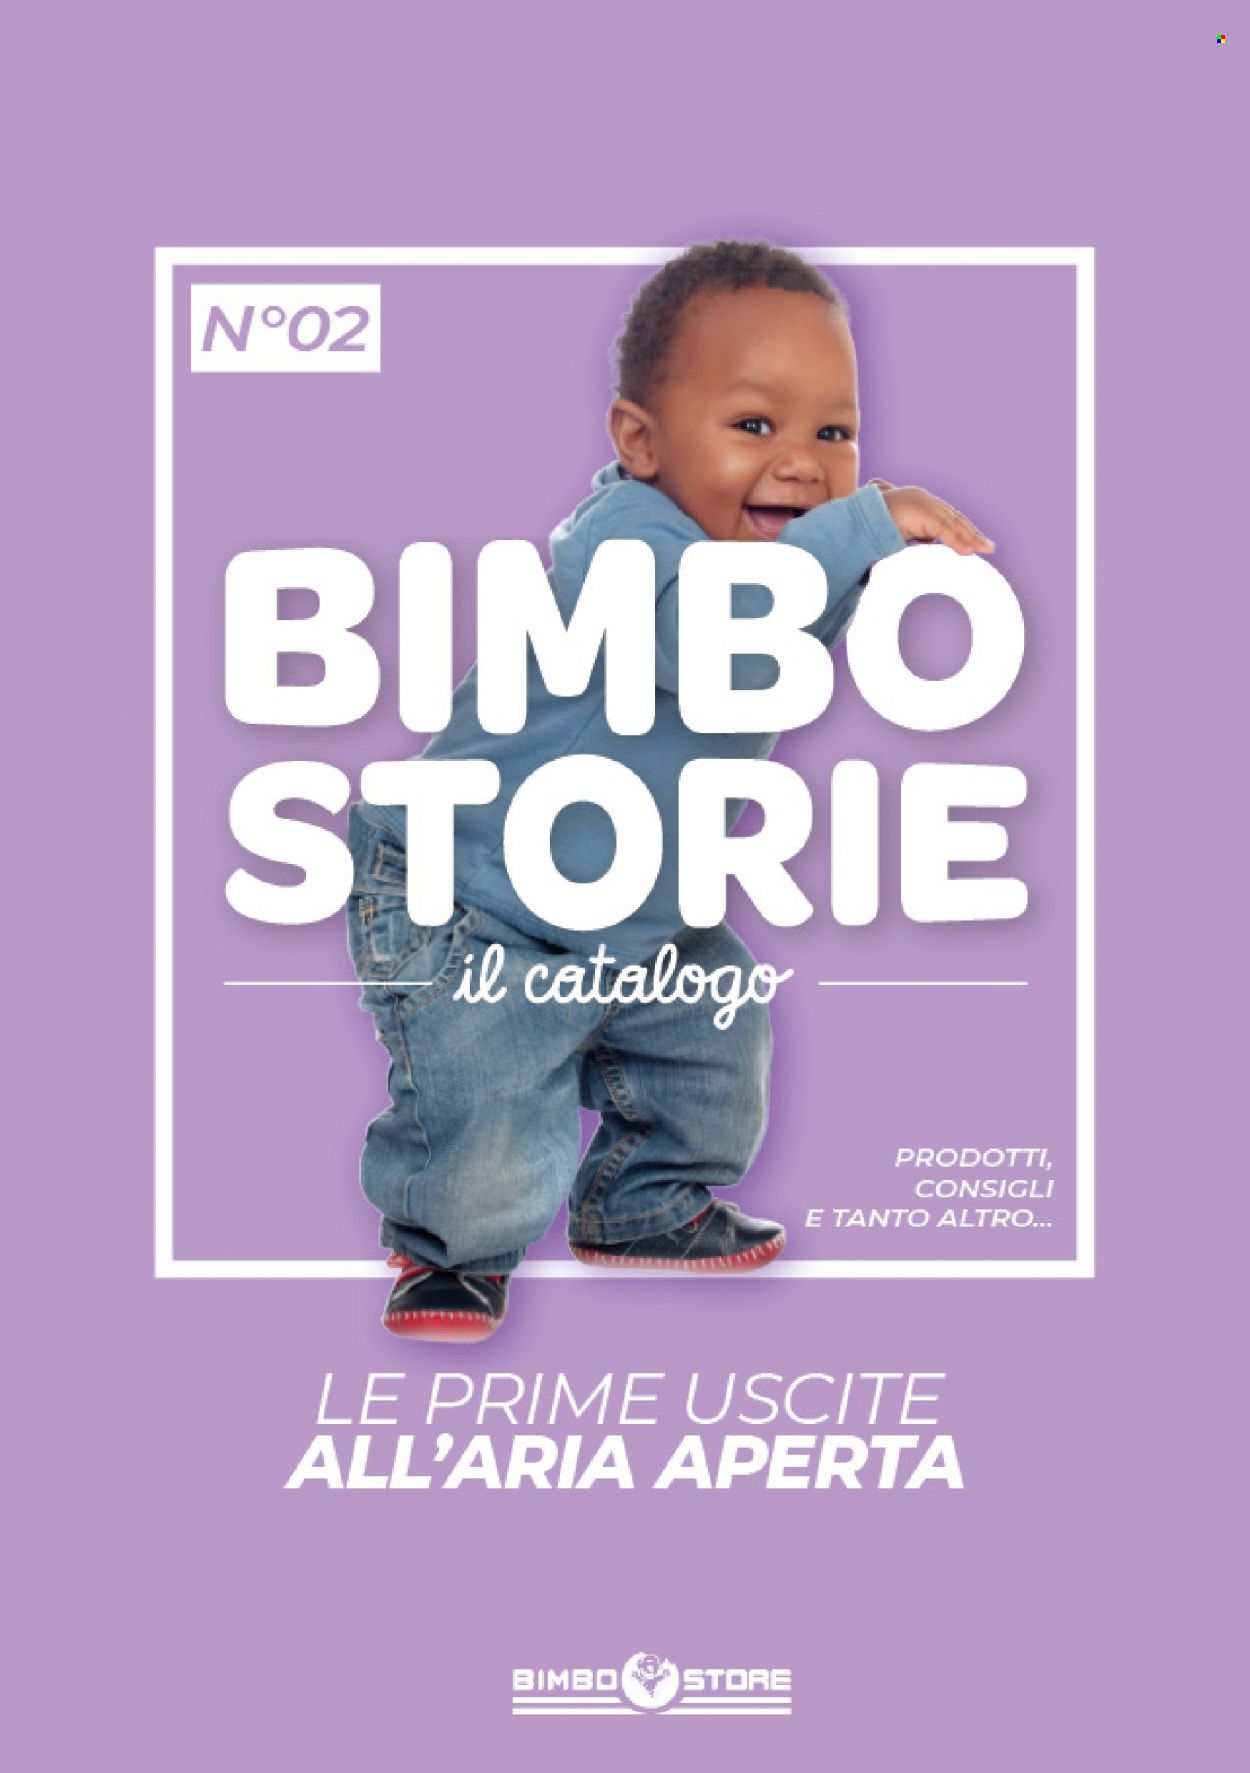 Volantino Bimbo Store. Pagina 1.